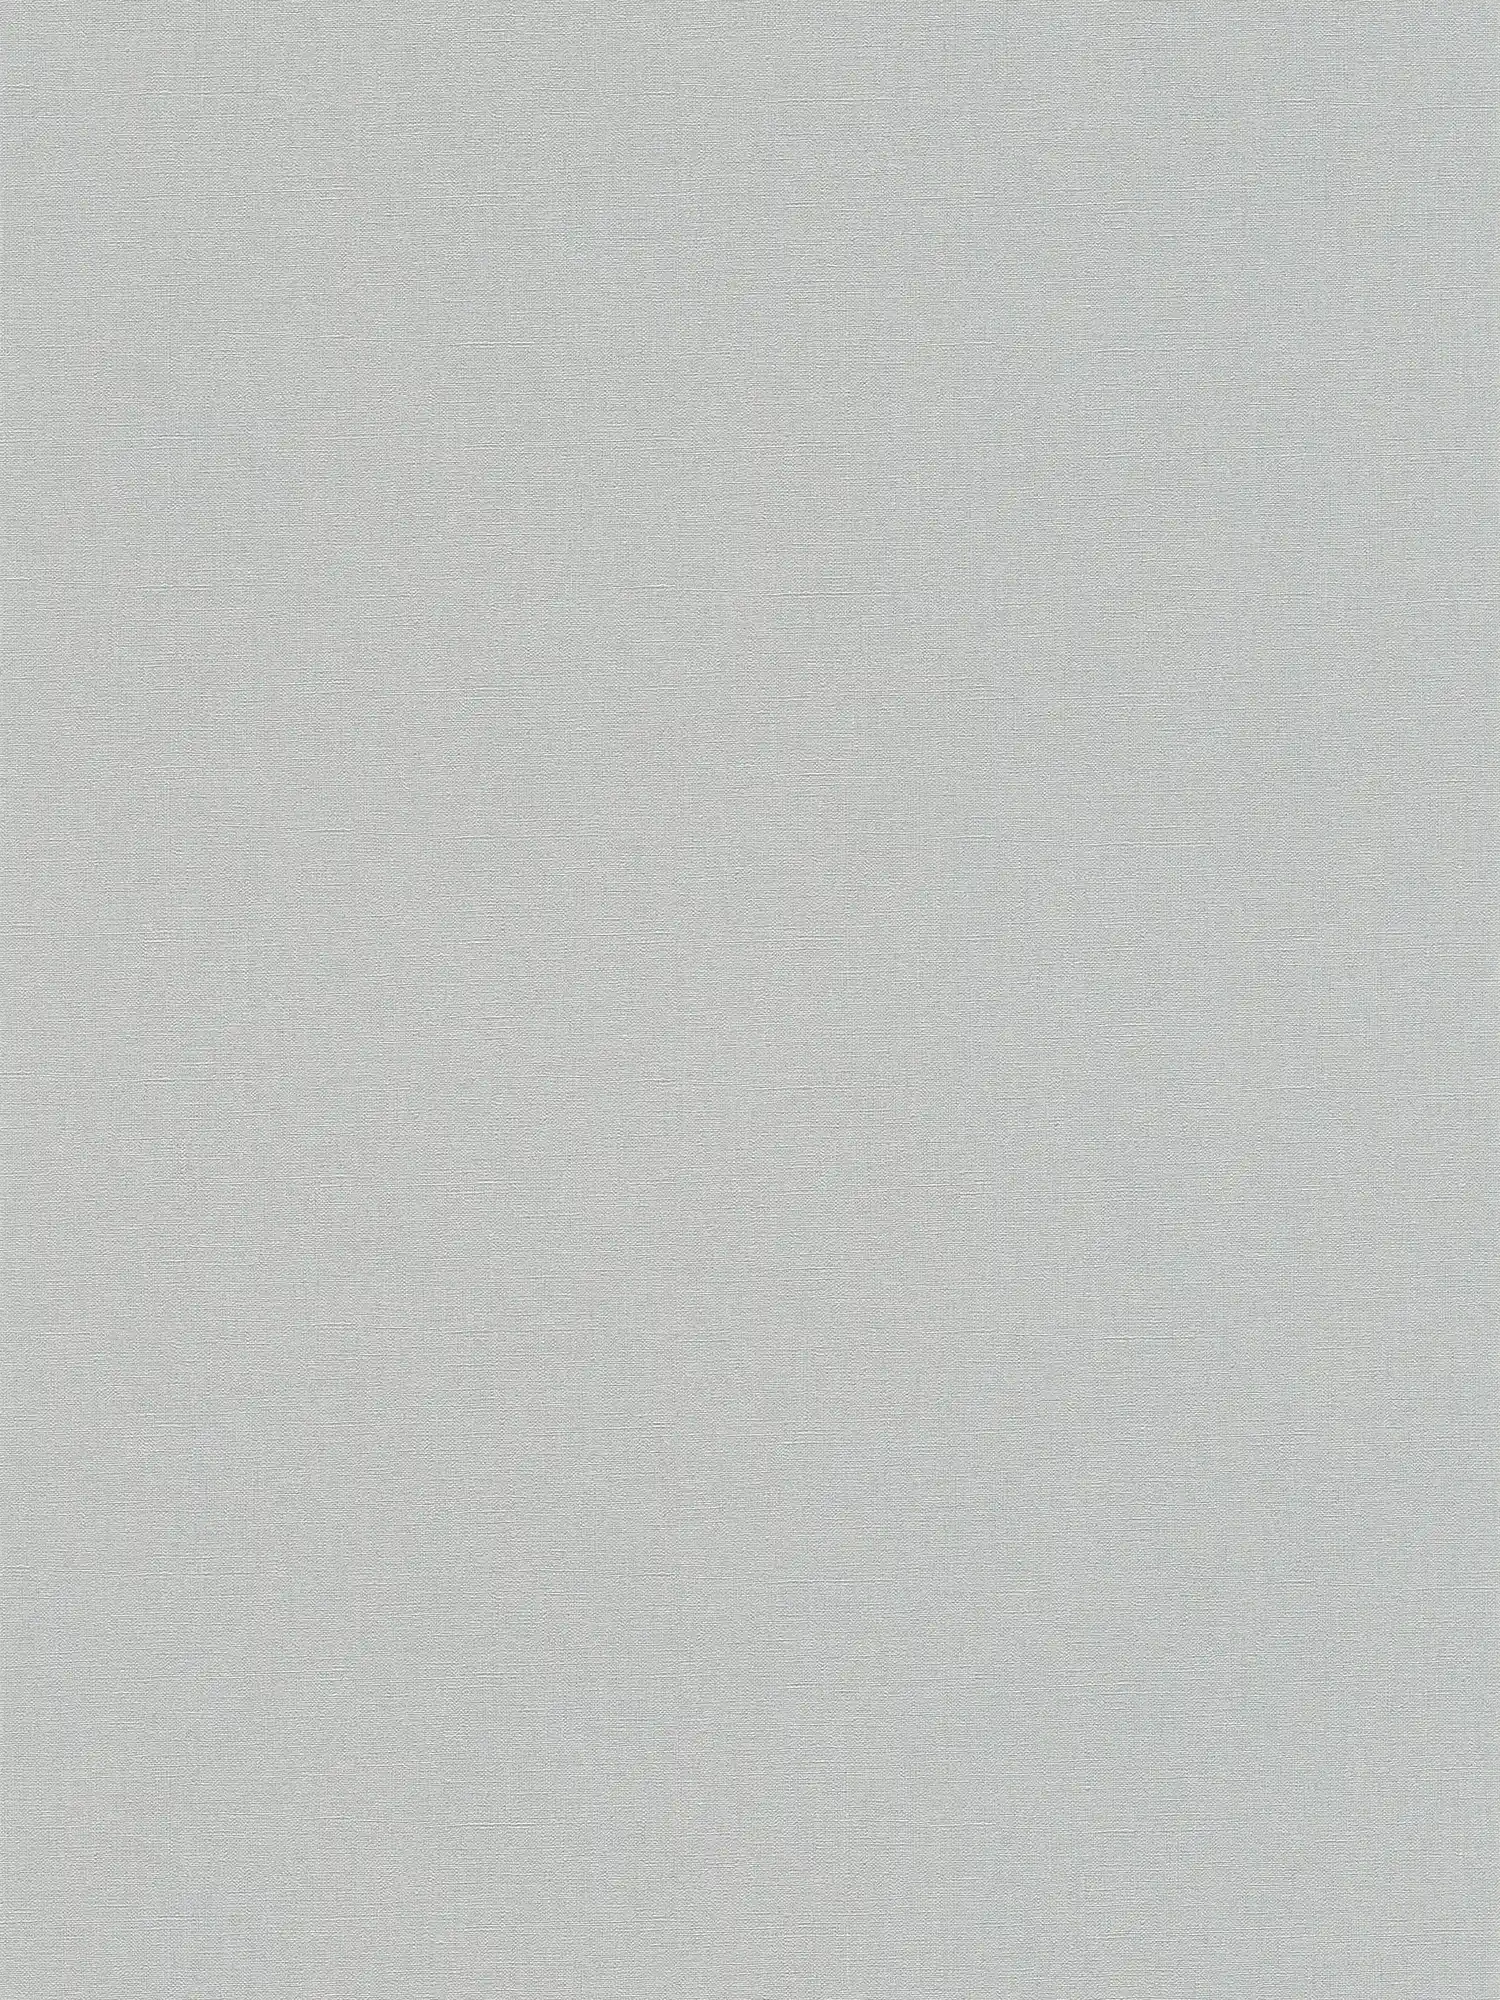 Papier peint uni avec léger effet structuré - gris, gris foncé
